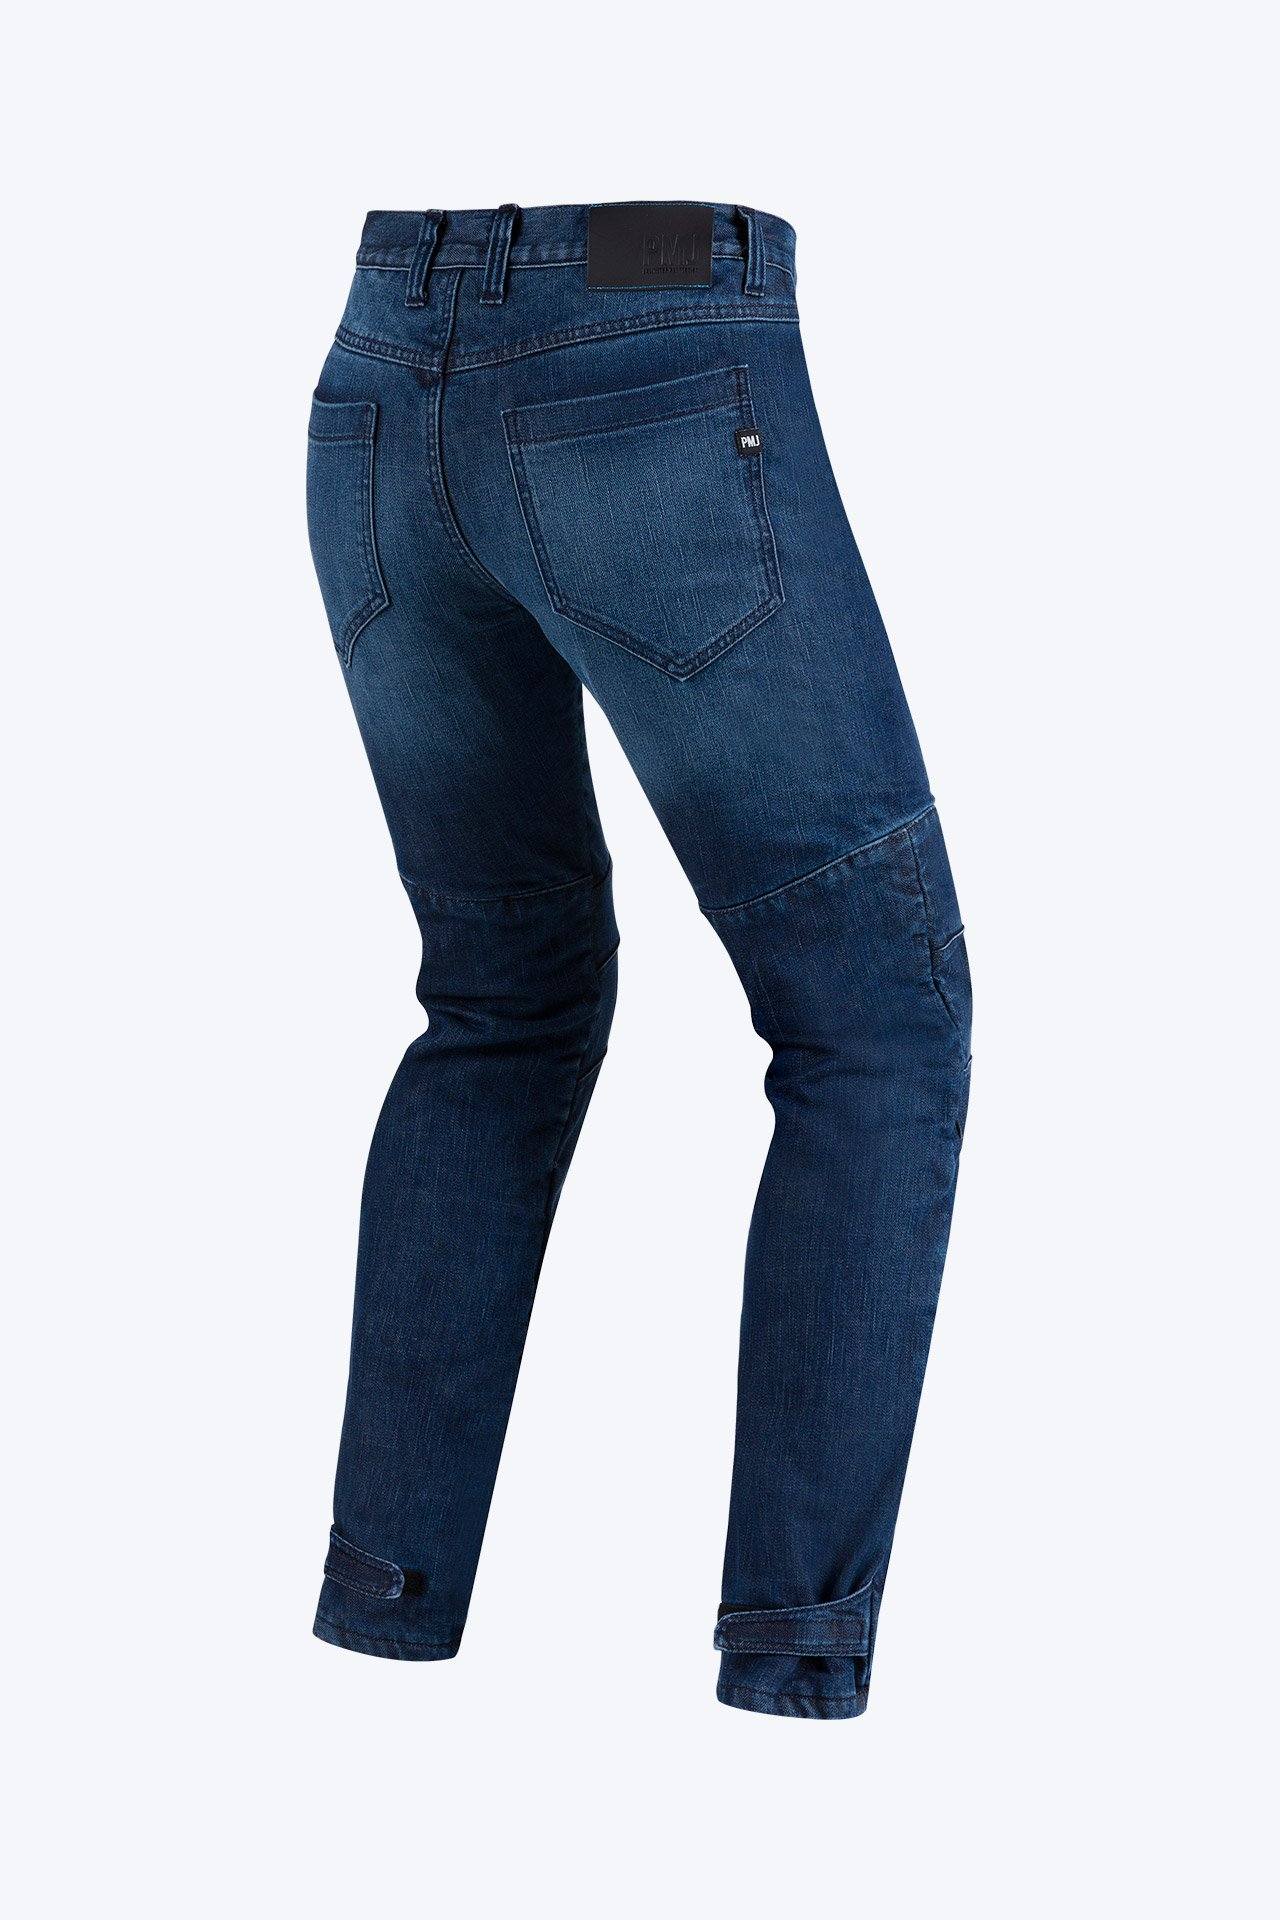 PMJ JEANS TITANIIUM,jeans, #collections#, -spazio moto- bastia umbra - perugia